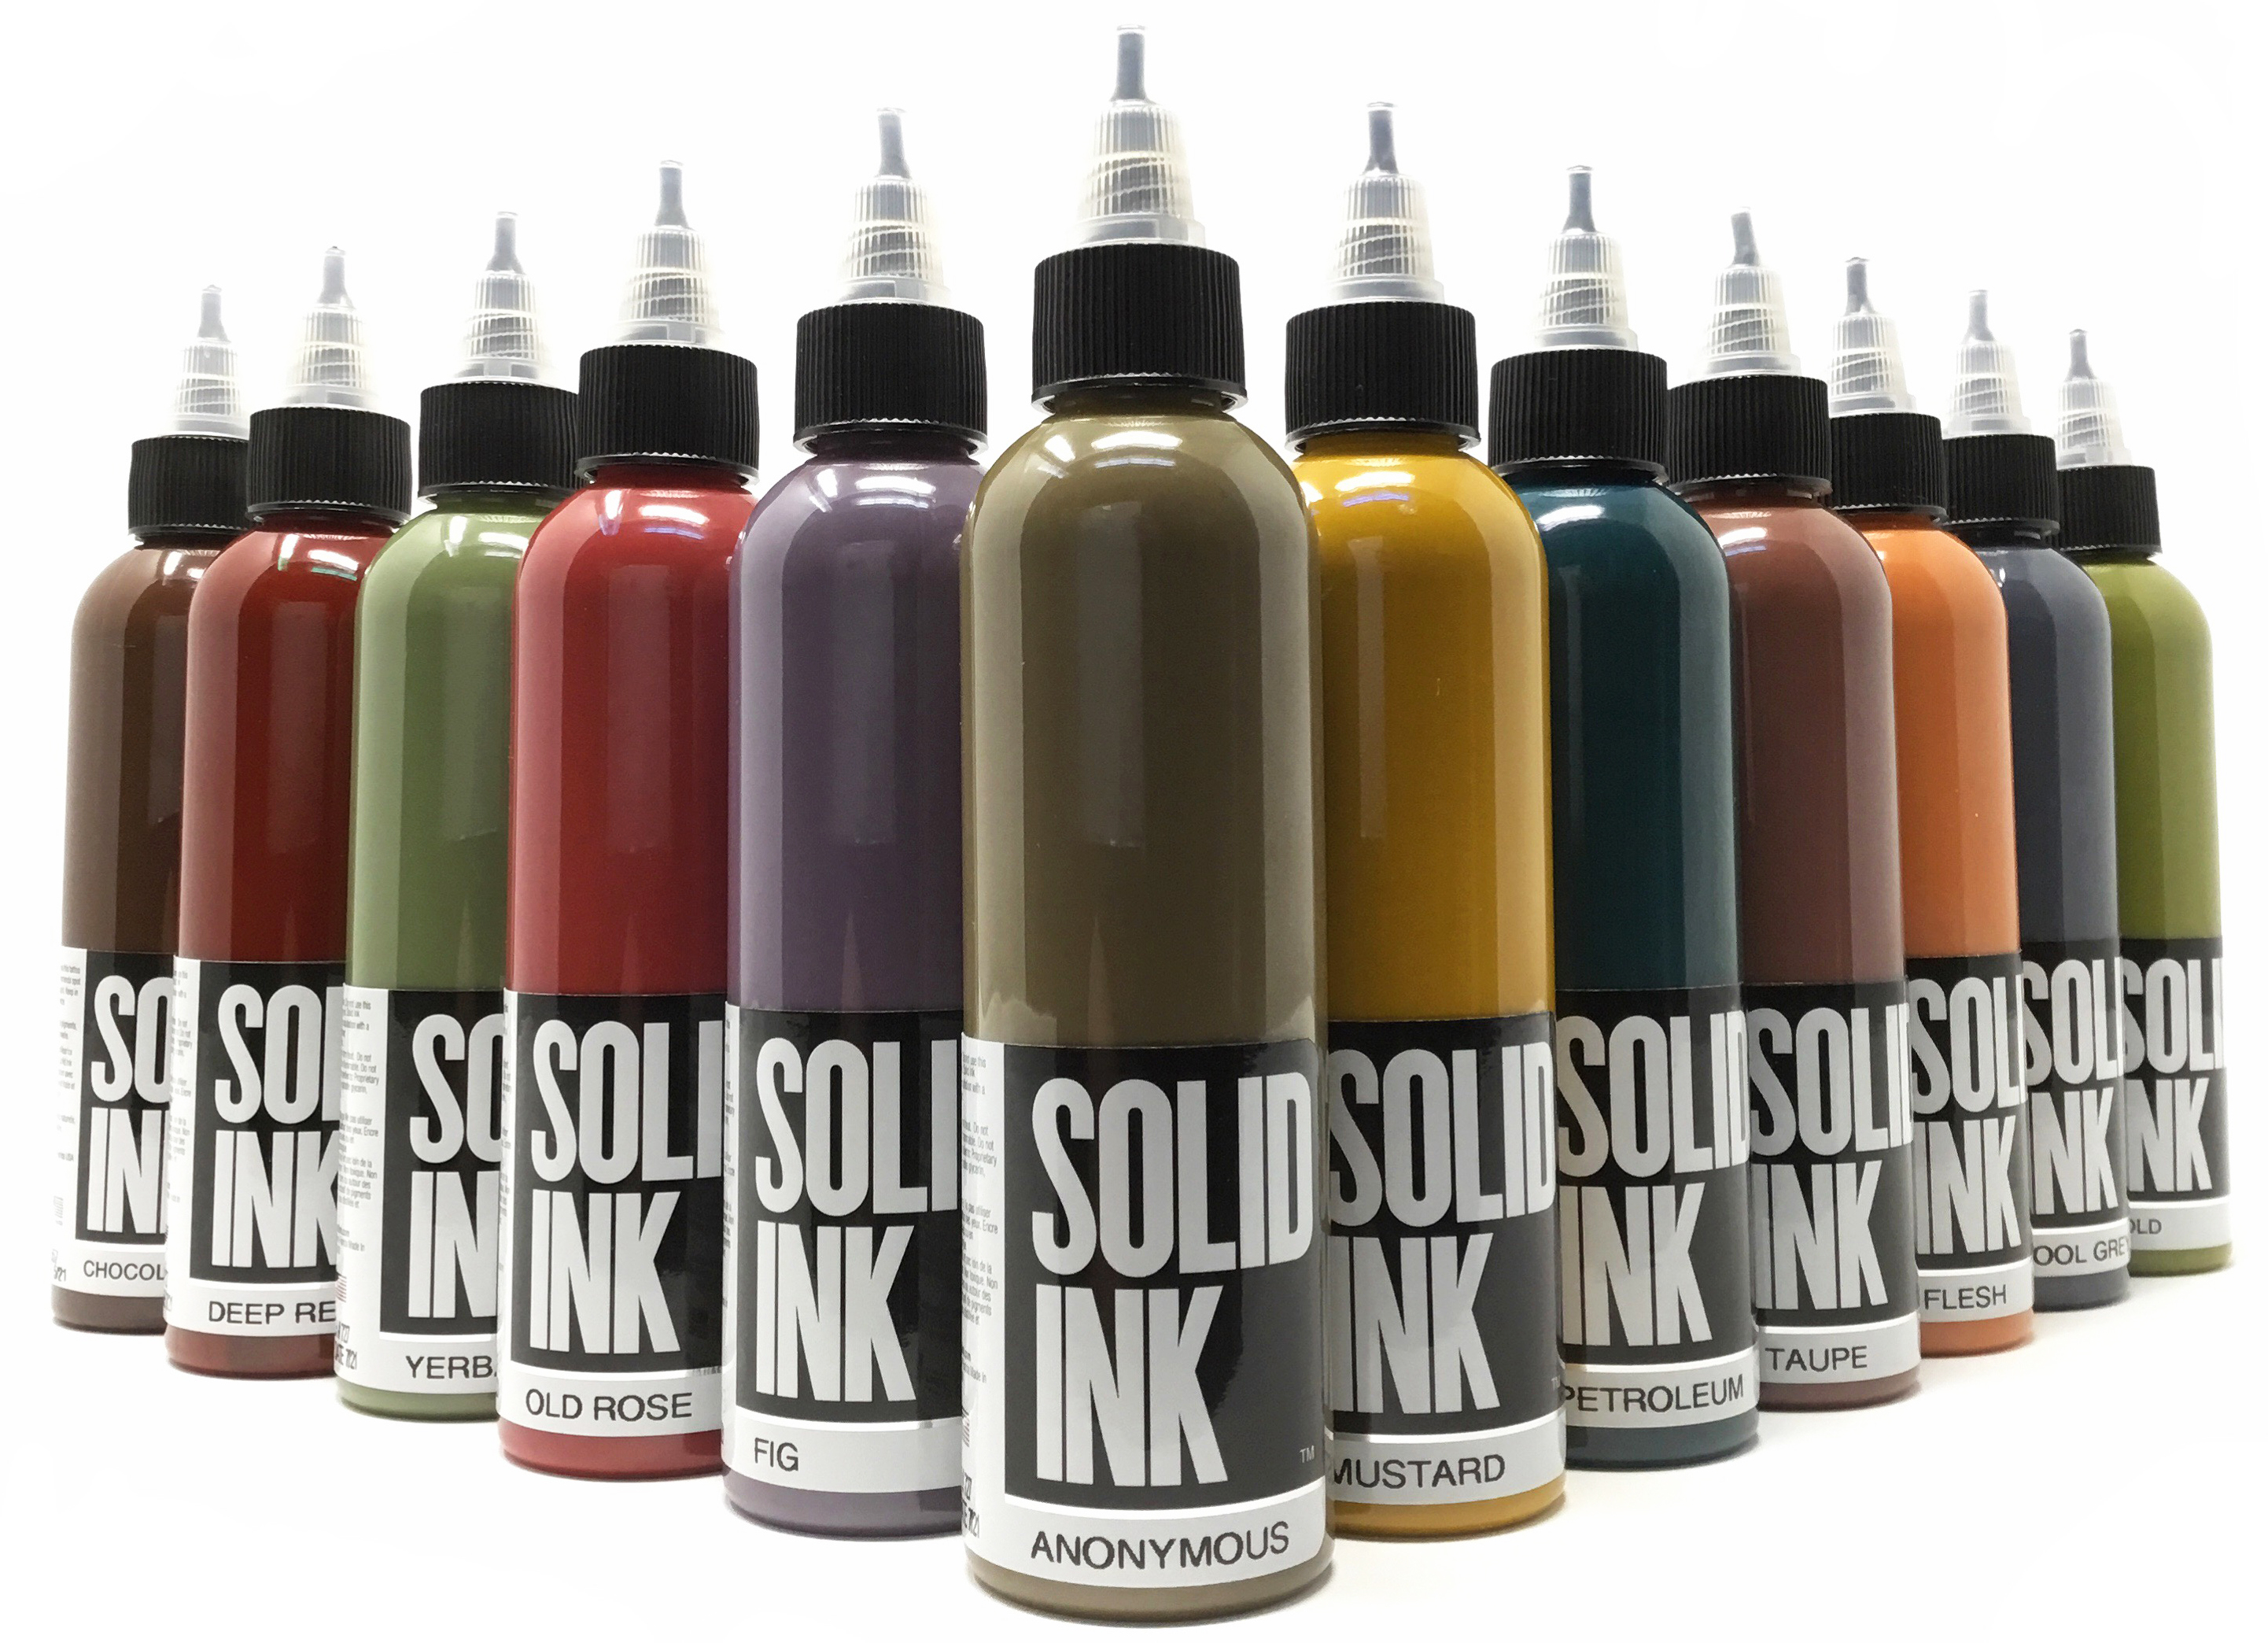 Краска Solid Ink Petroleum